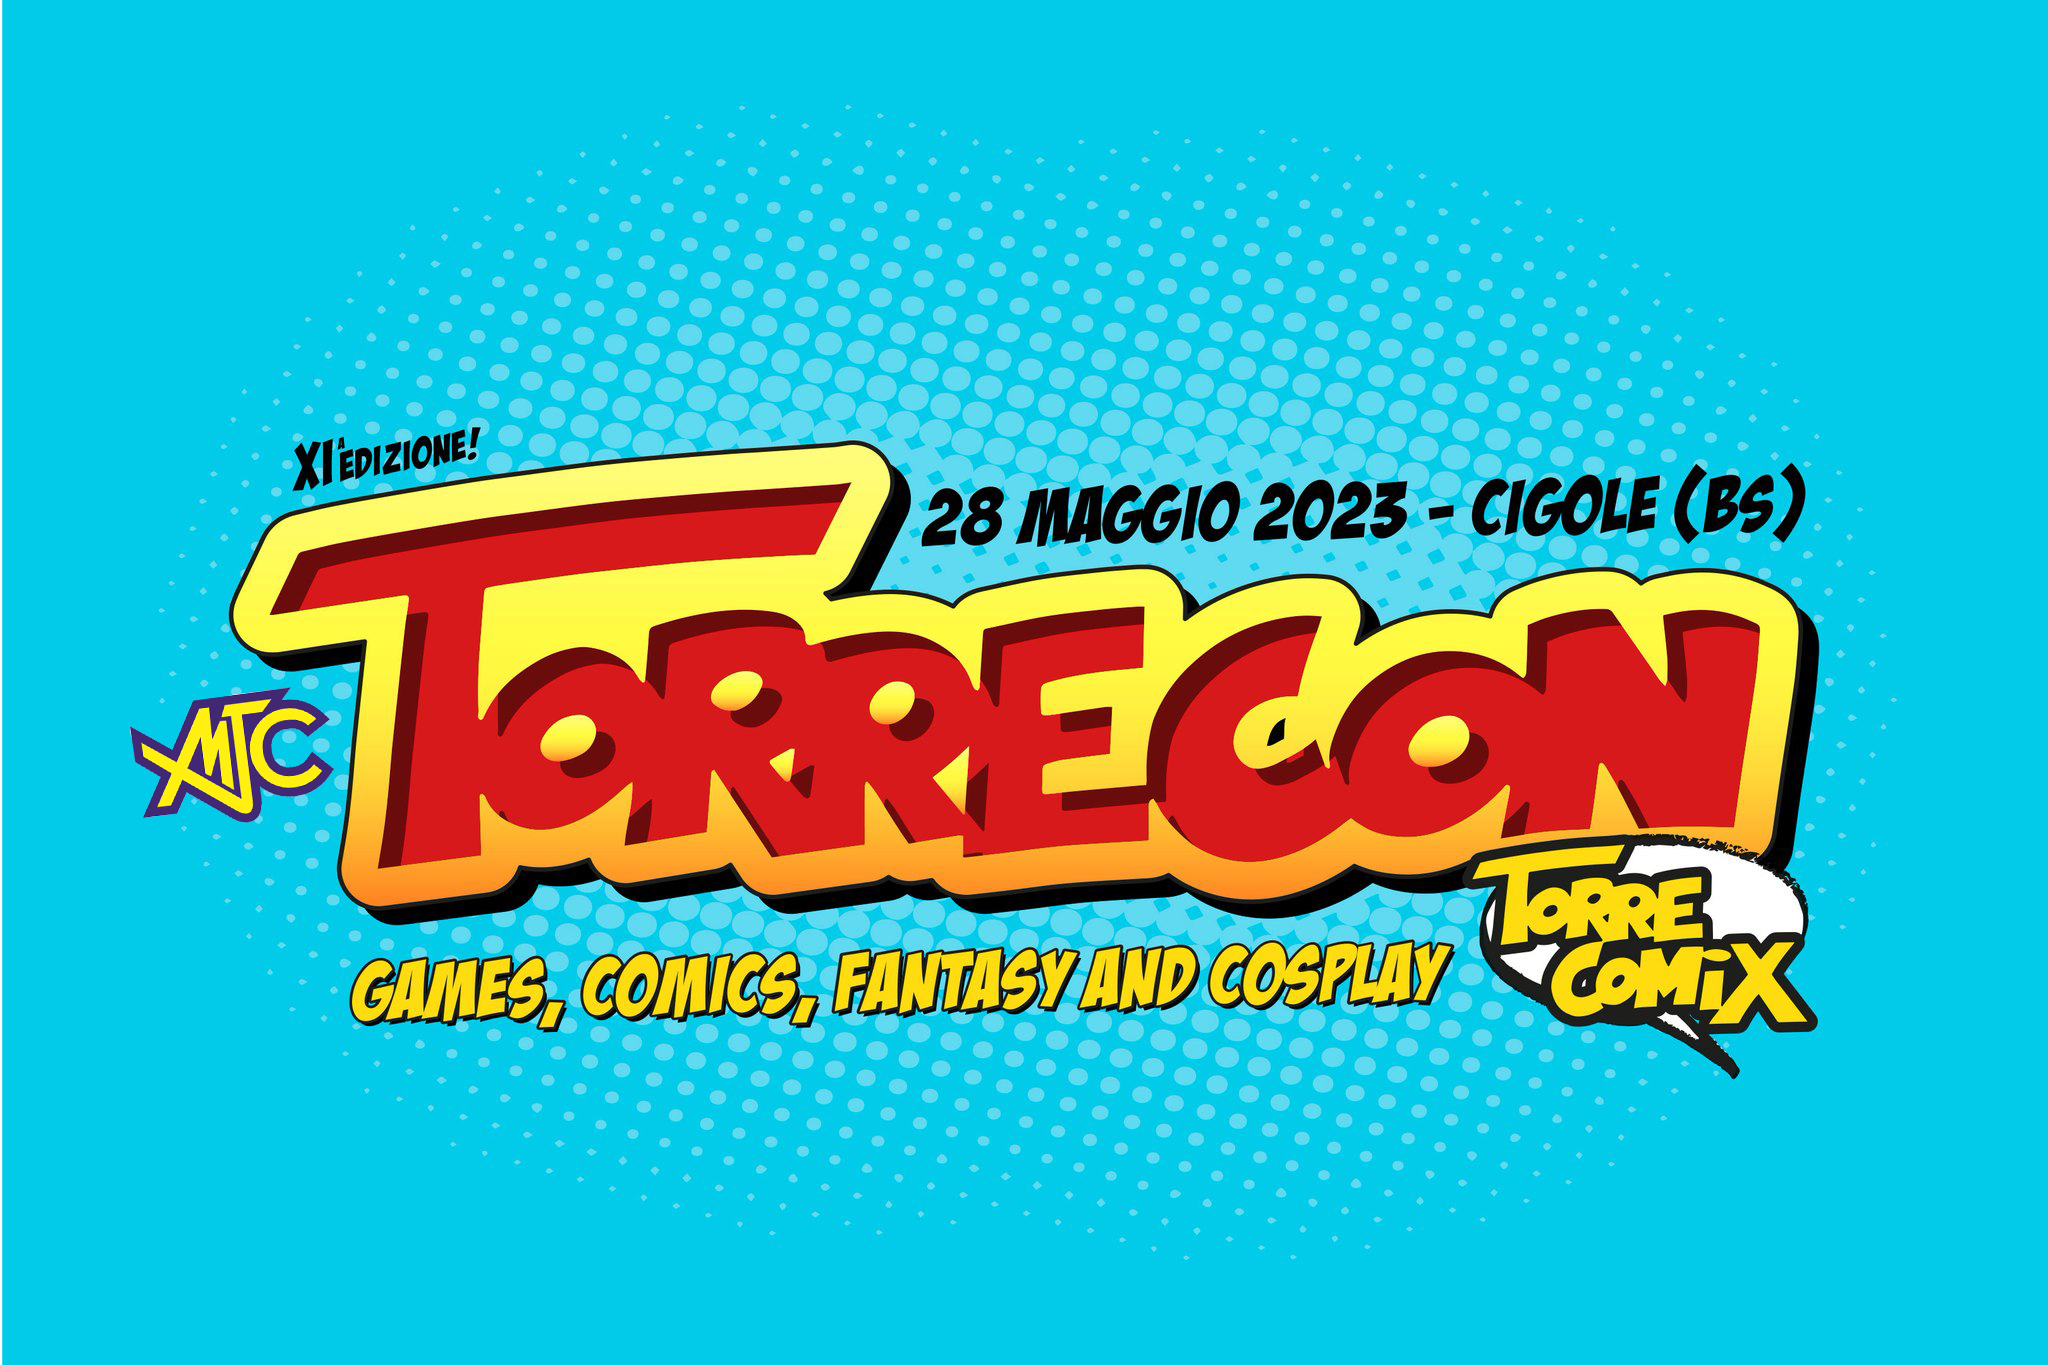 TorreCon – Torre Comix 2023